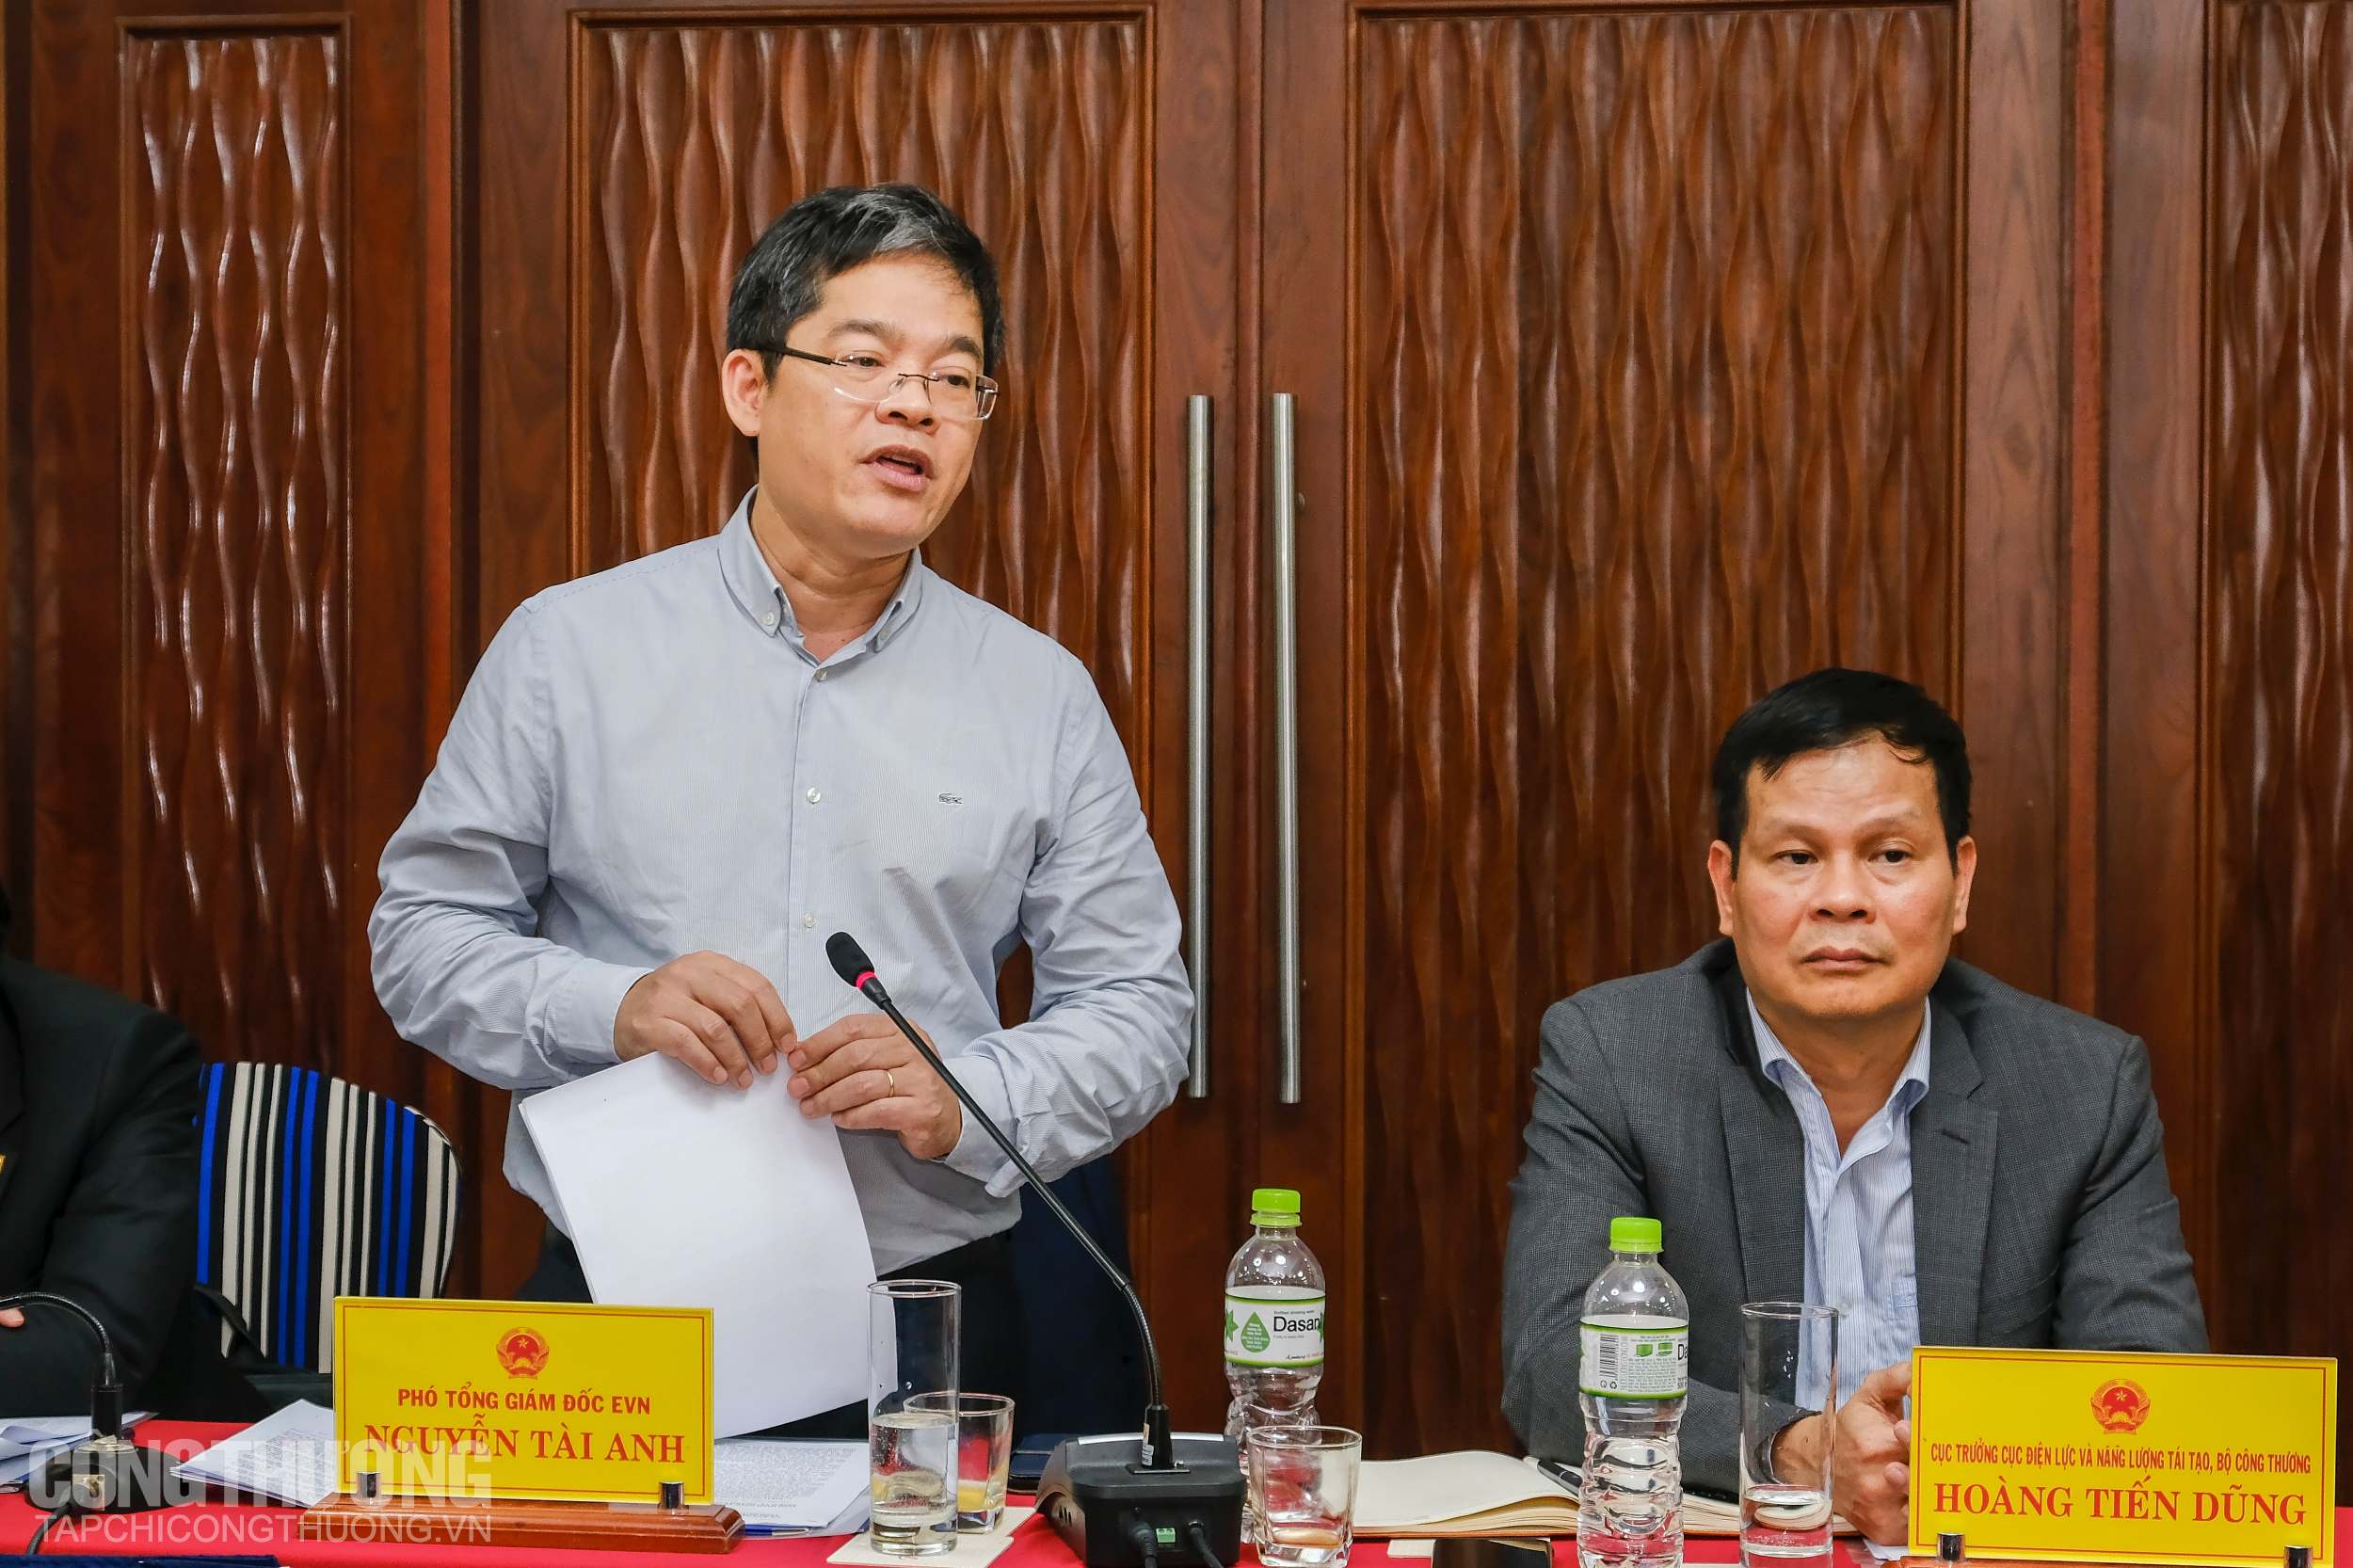 Phó Tổng Giám đốc EVN Nguyễn Tài Anh